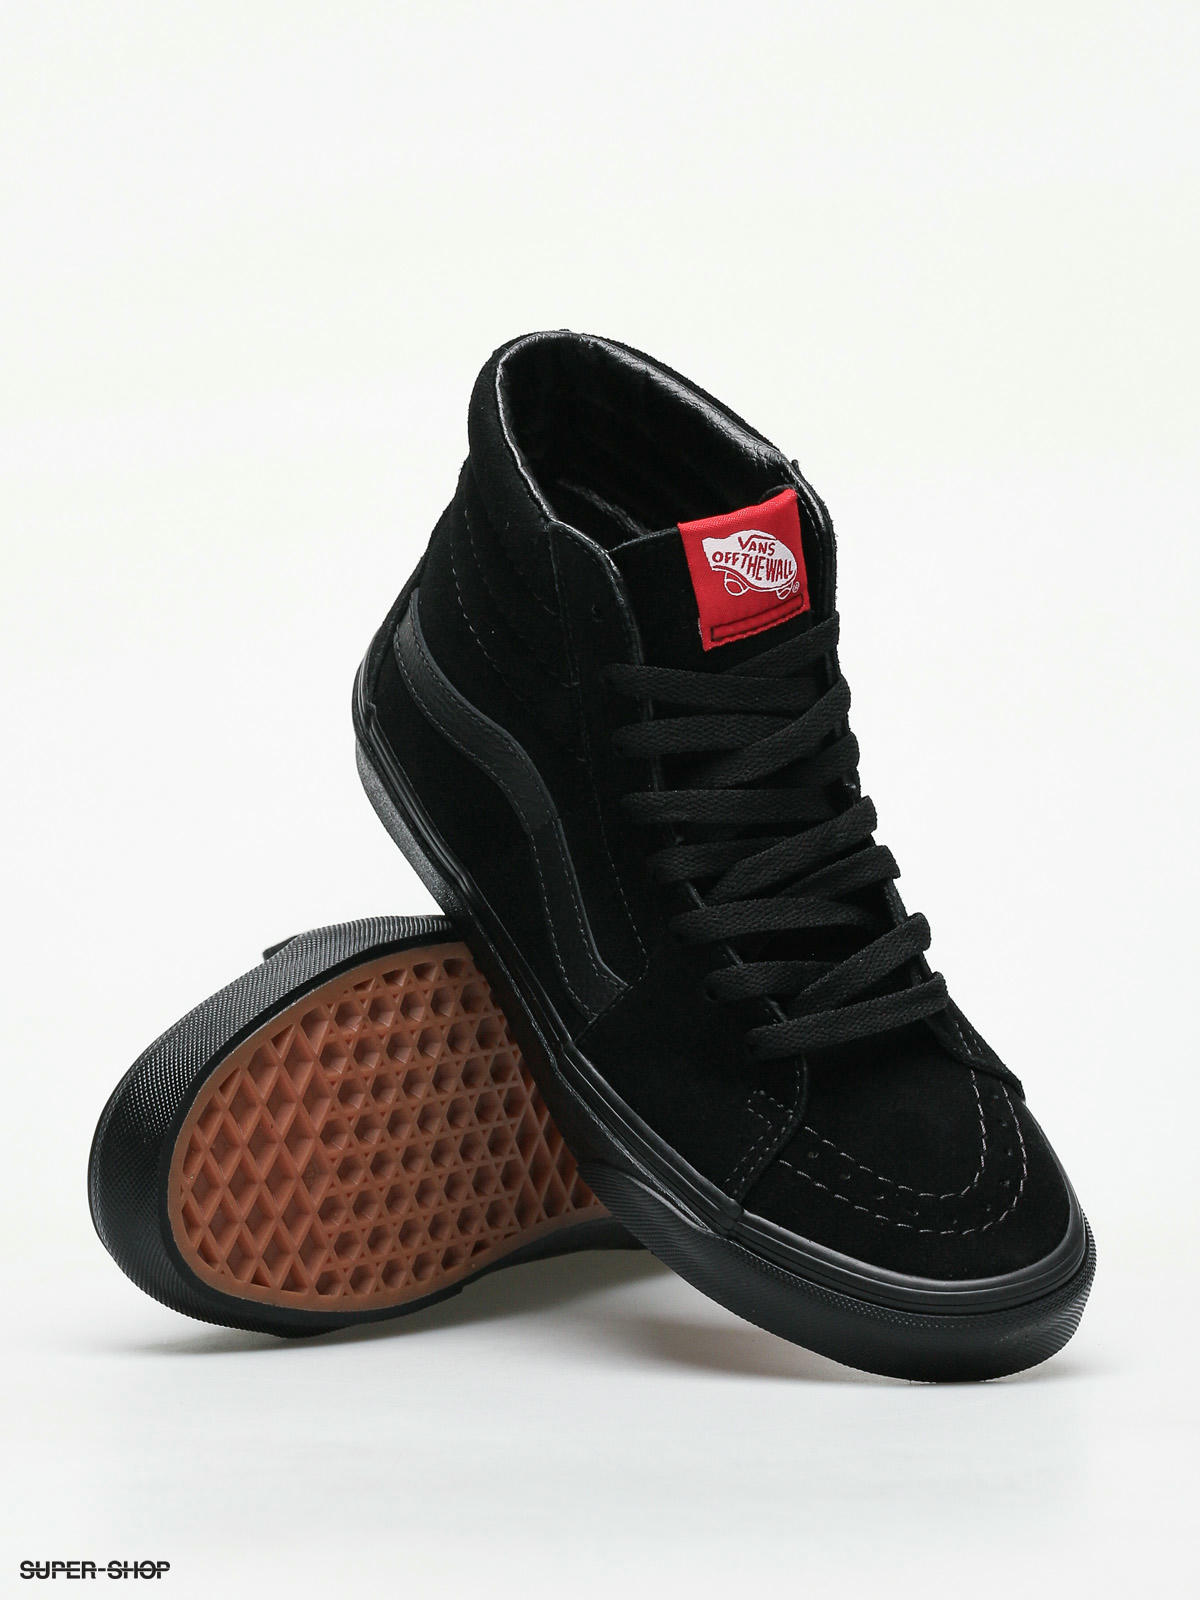 fusion Forskel Kro Vans Shoes Sk8 Hi (black/black)